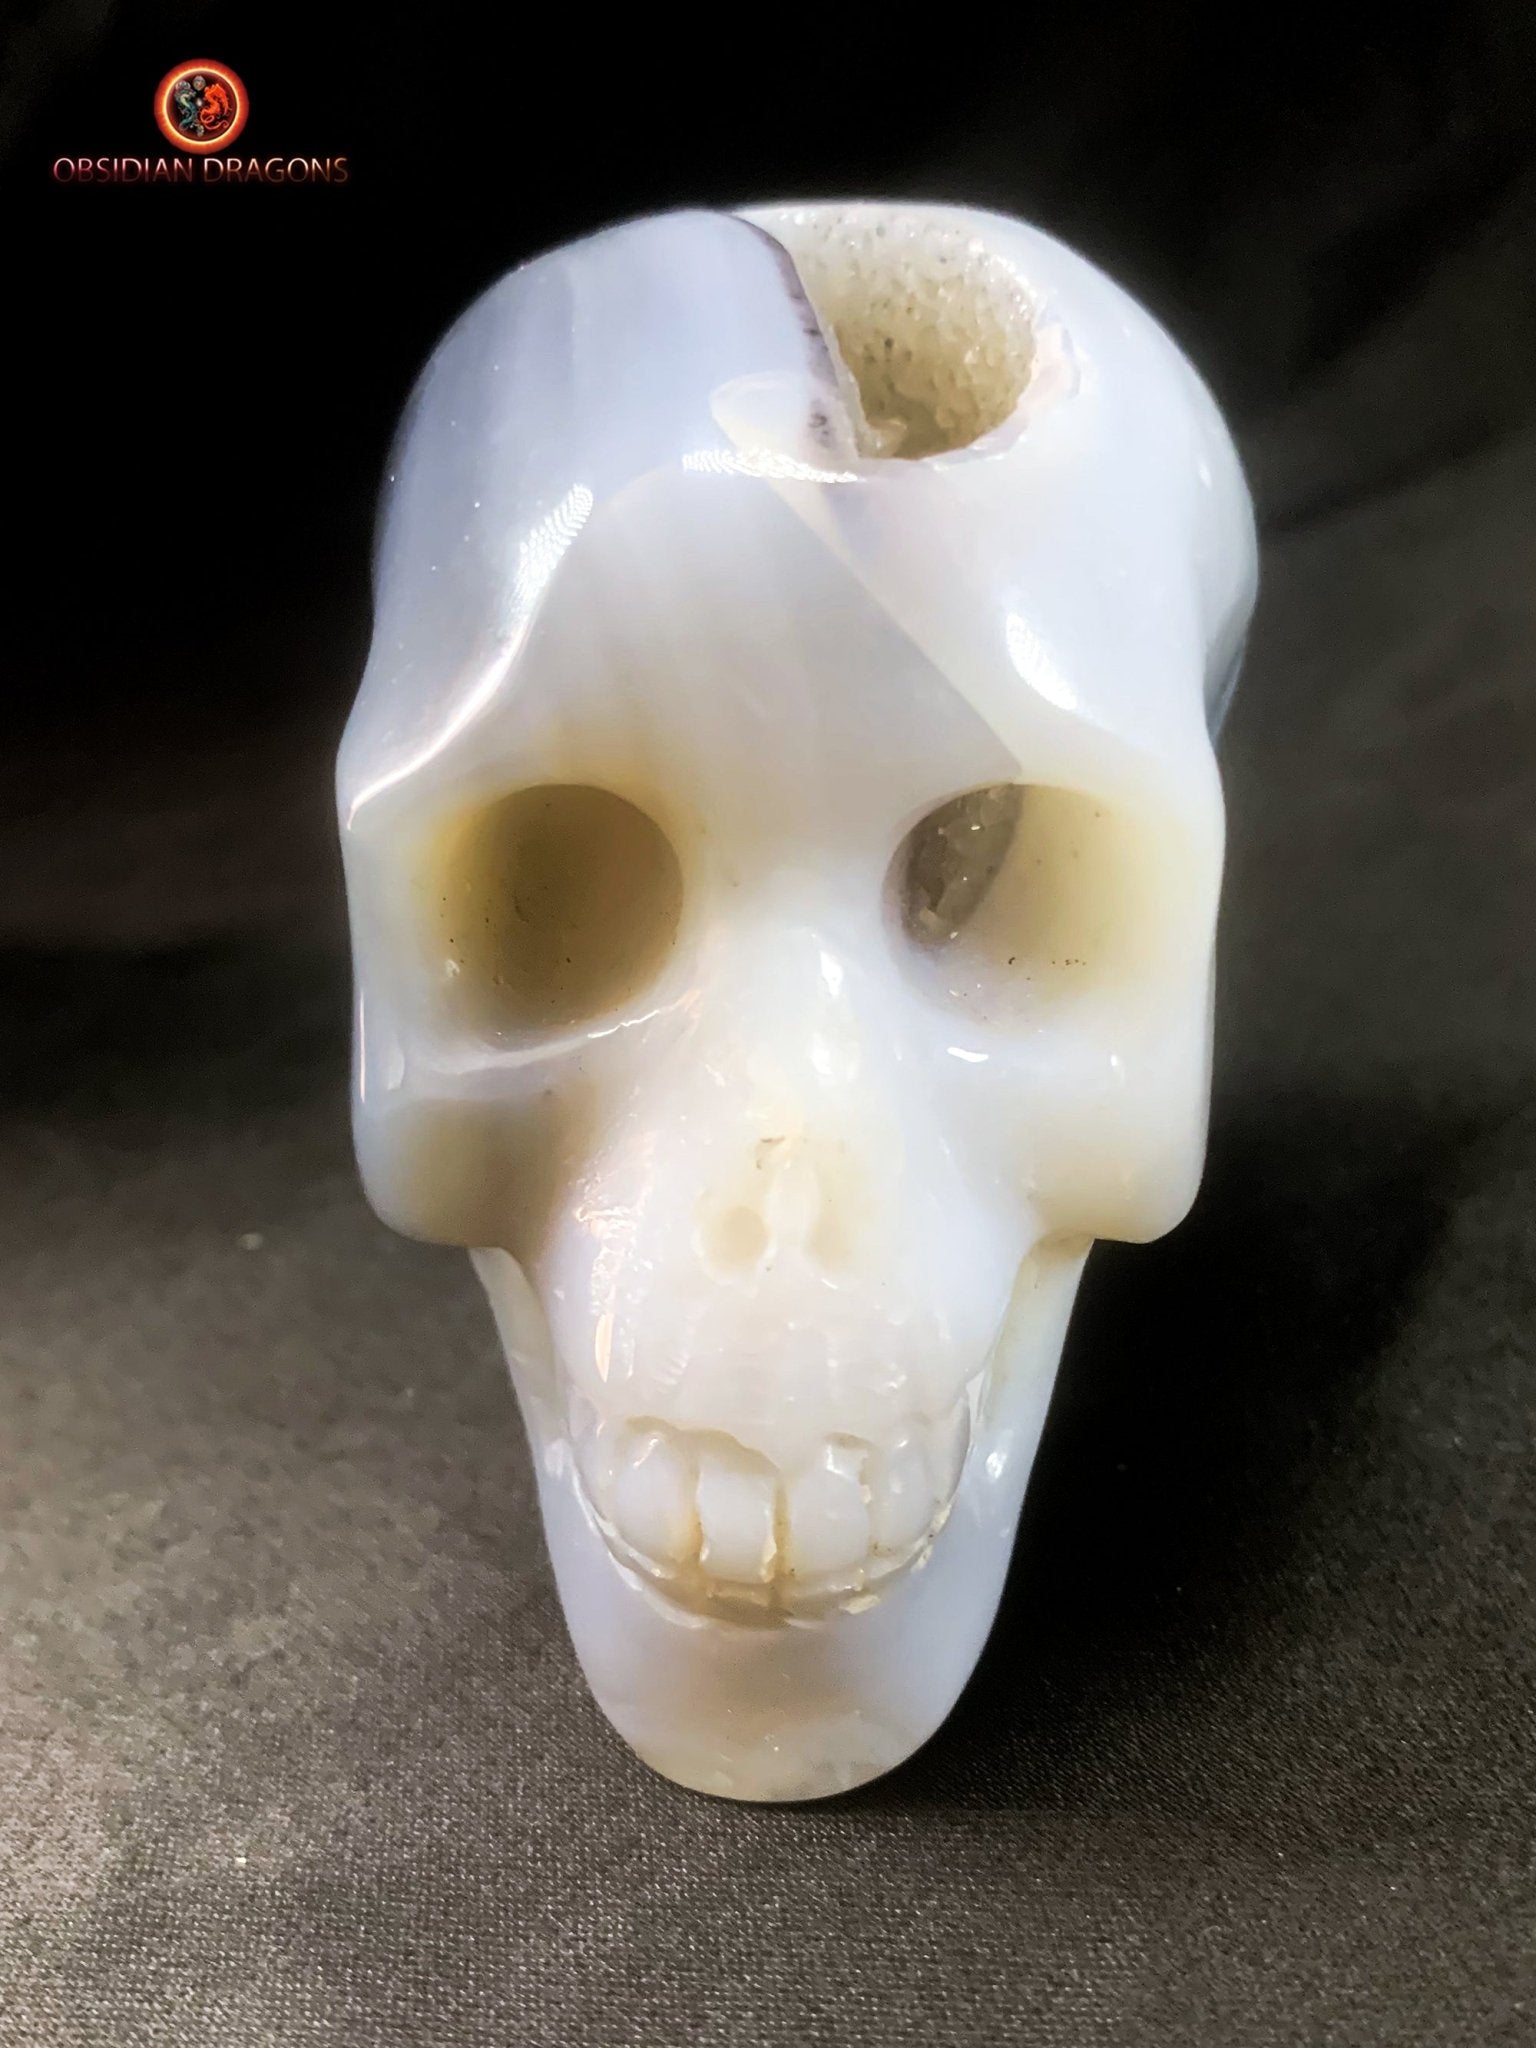 Petit crâne de cristal sculpté dans une géode de quartz | obsidian dragons